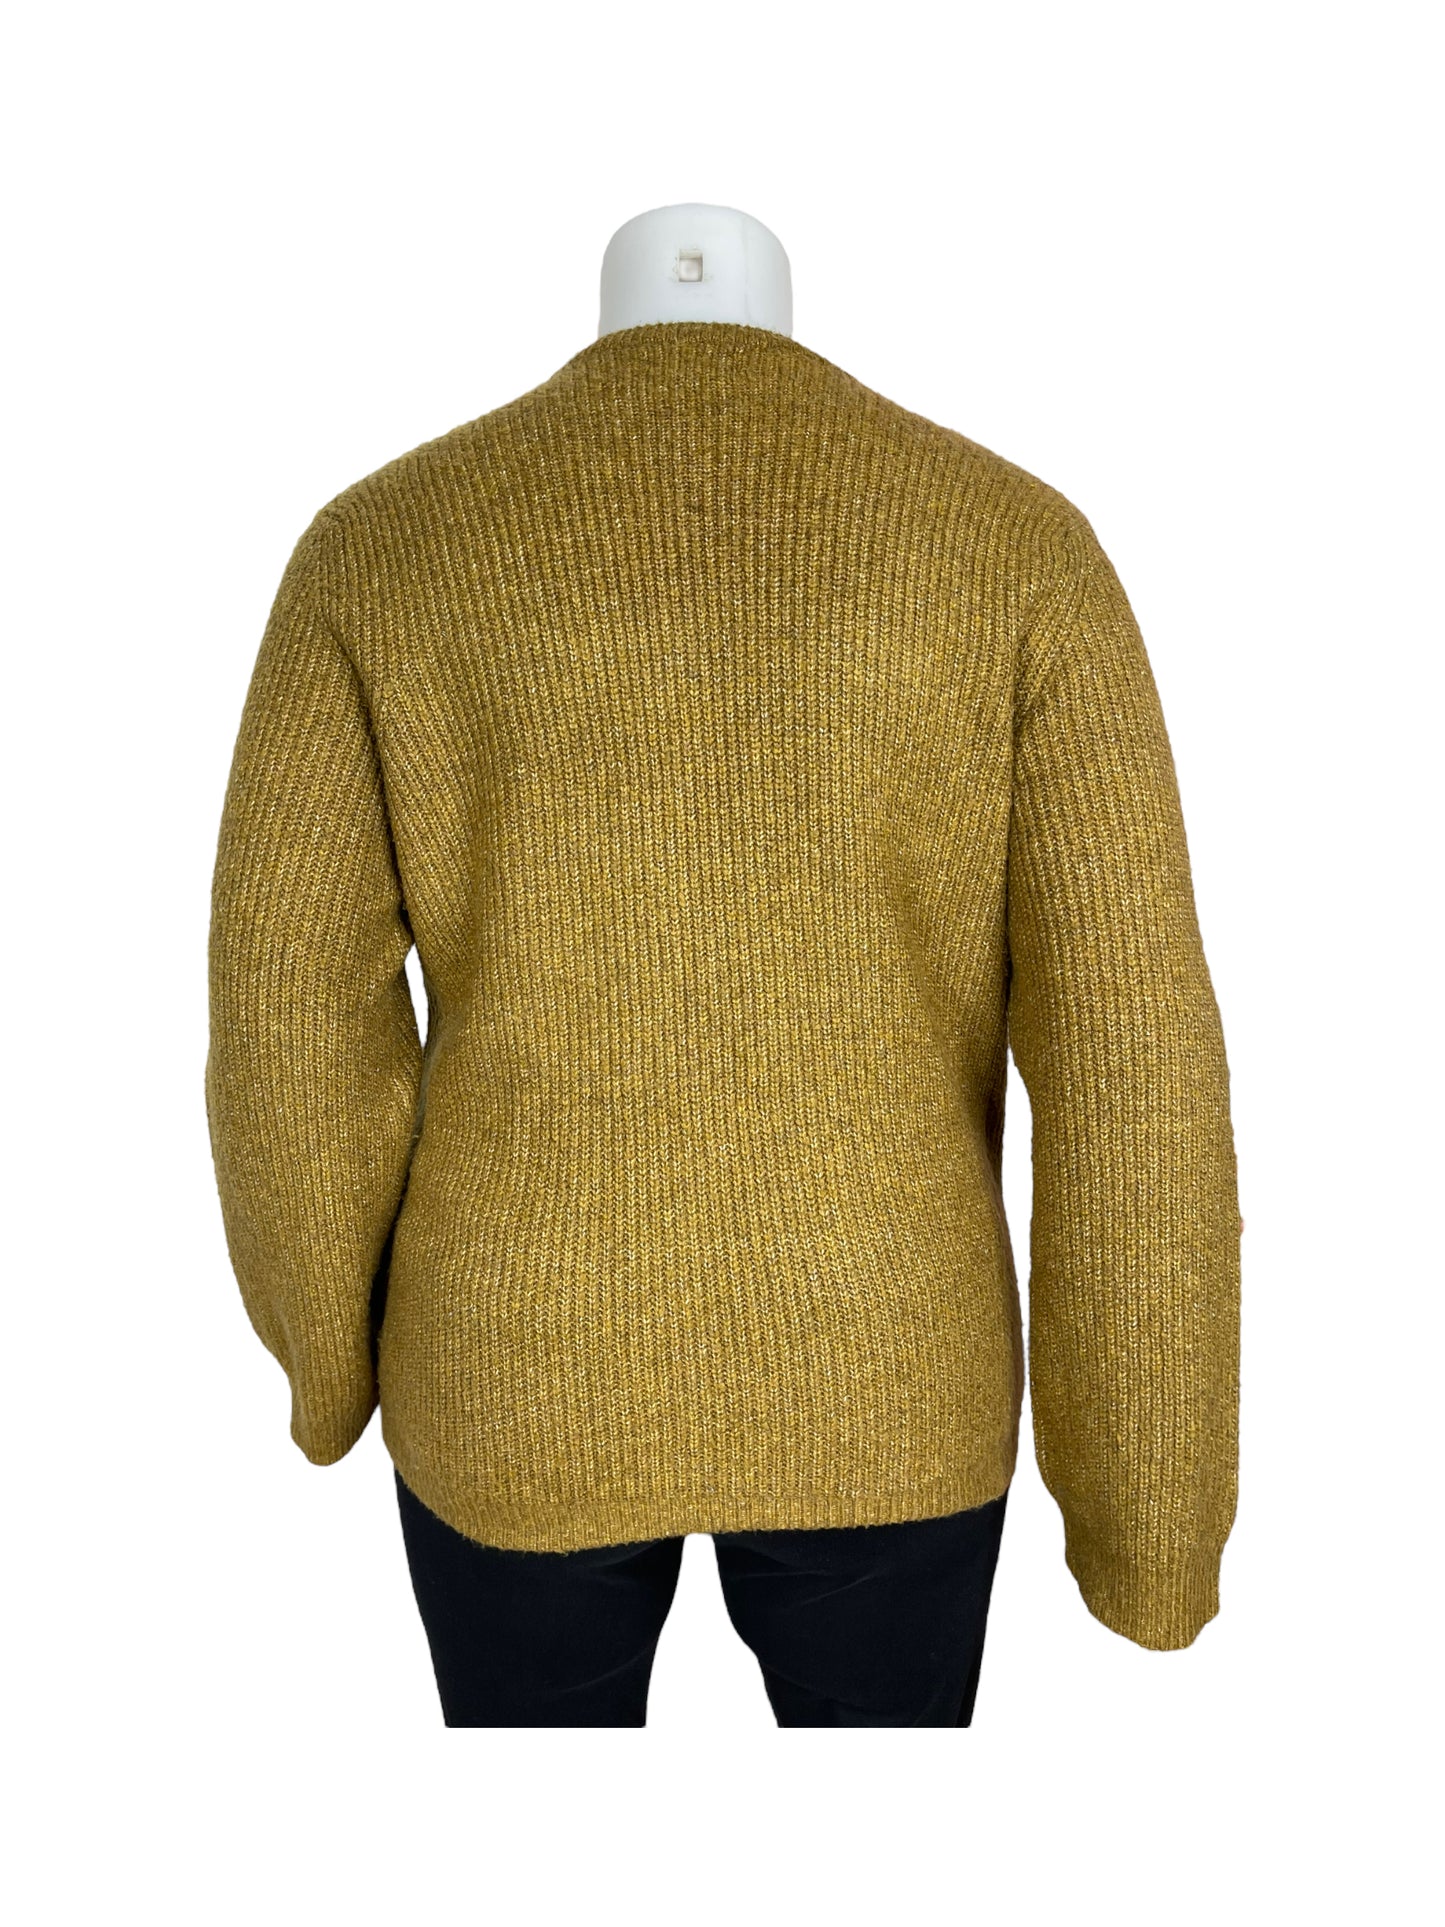 “M&S” Knit Mustard Yellow Sweater (XL)